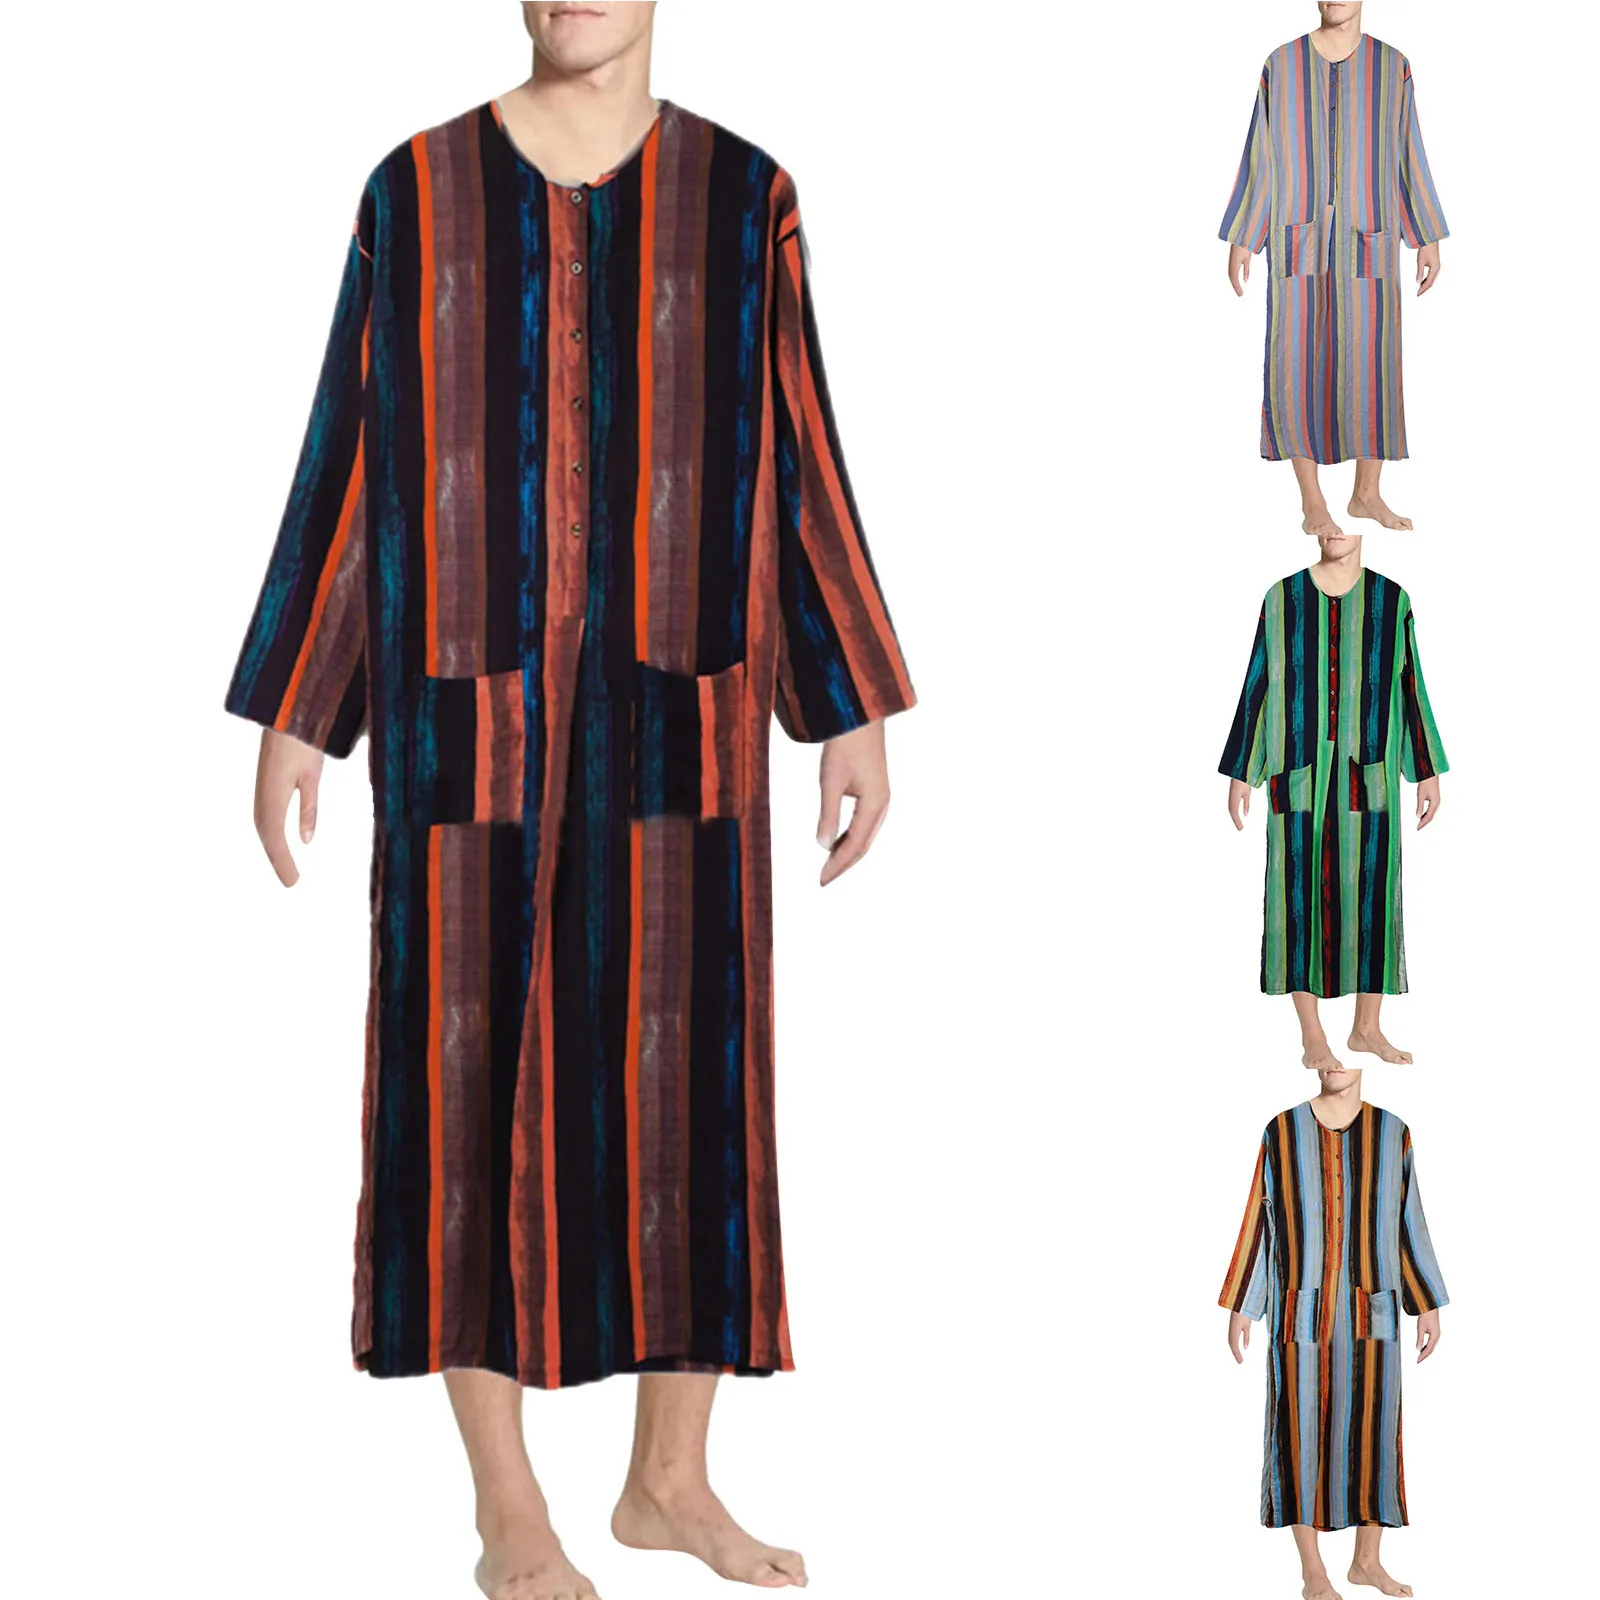 Chemises musulmanes à manches longues pour hommes, style ethnique, imprimé rayé, décontracté, adt Jubba Thobe, arabe islamique, caftan de Dubaï